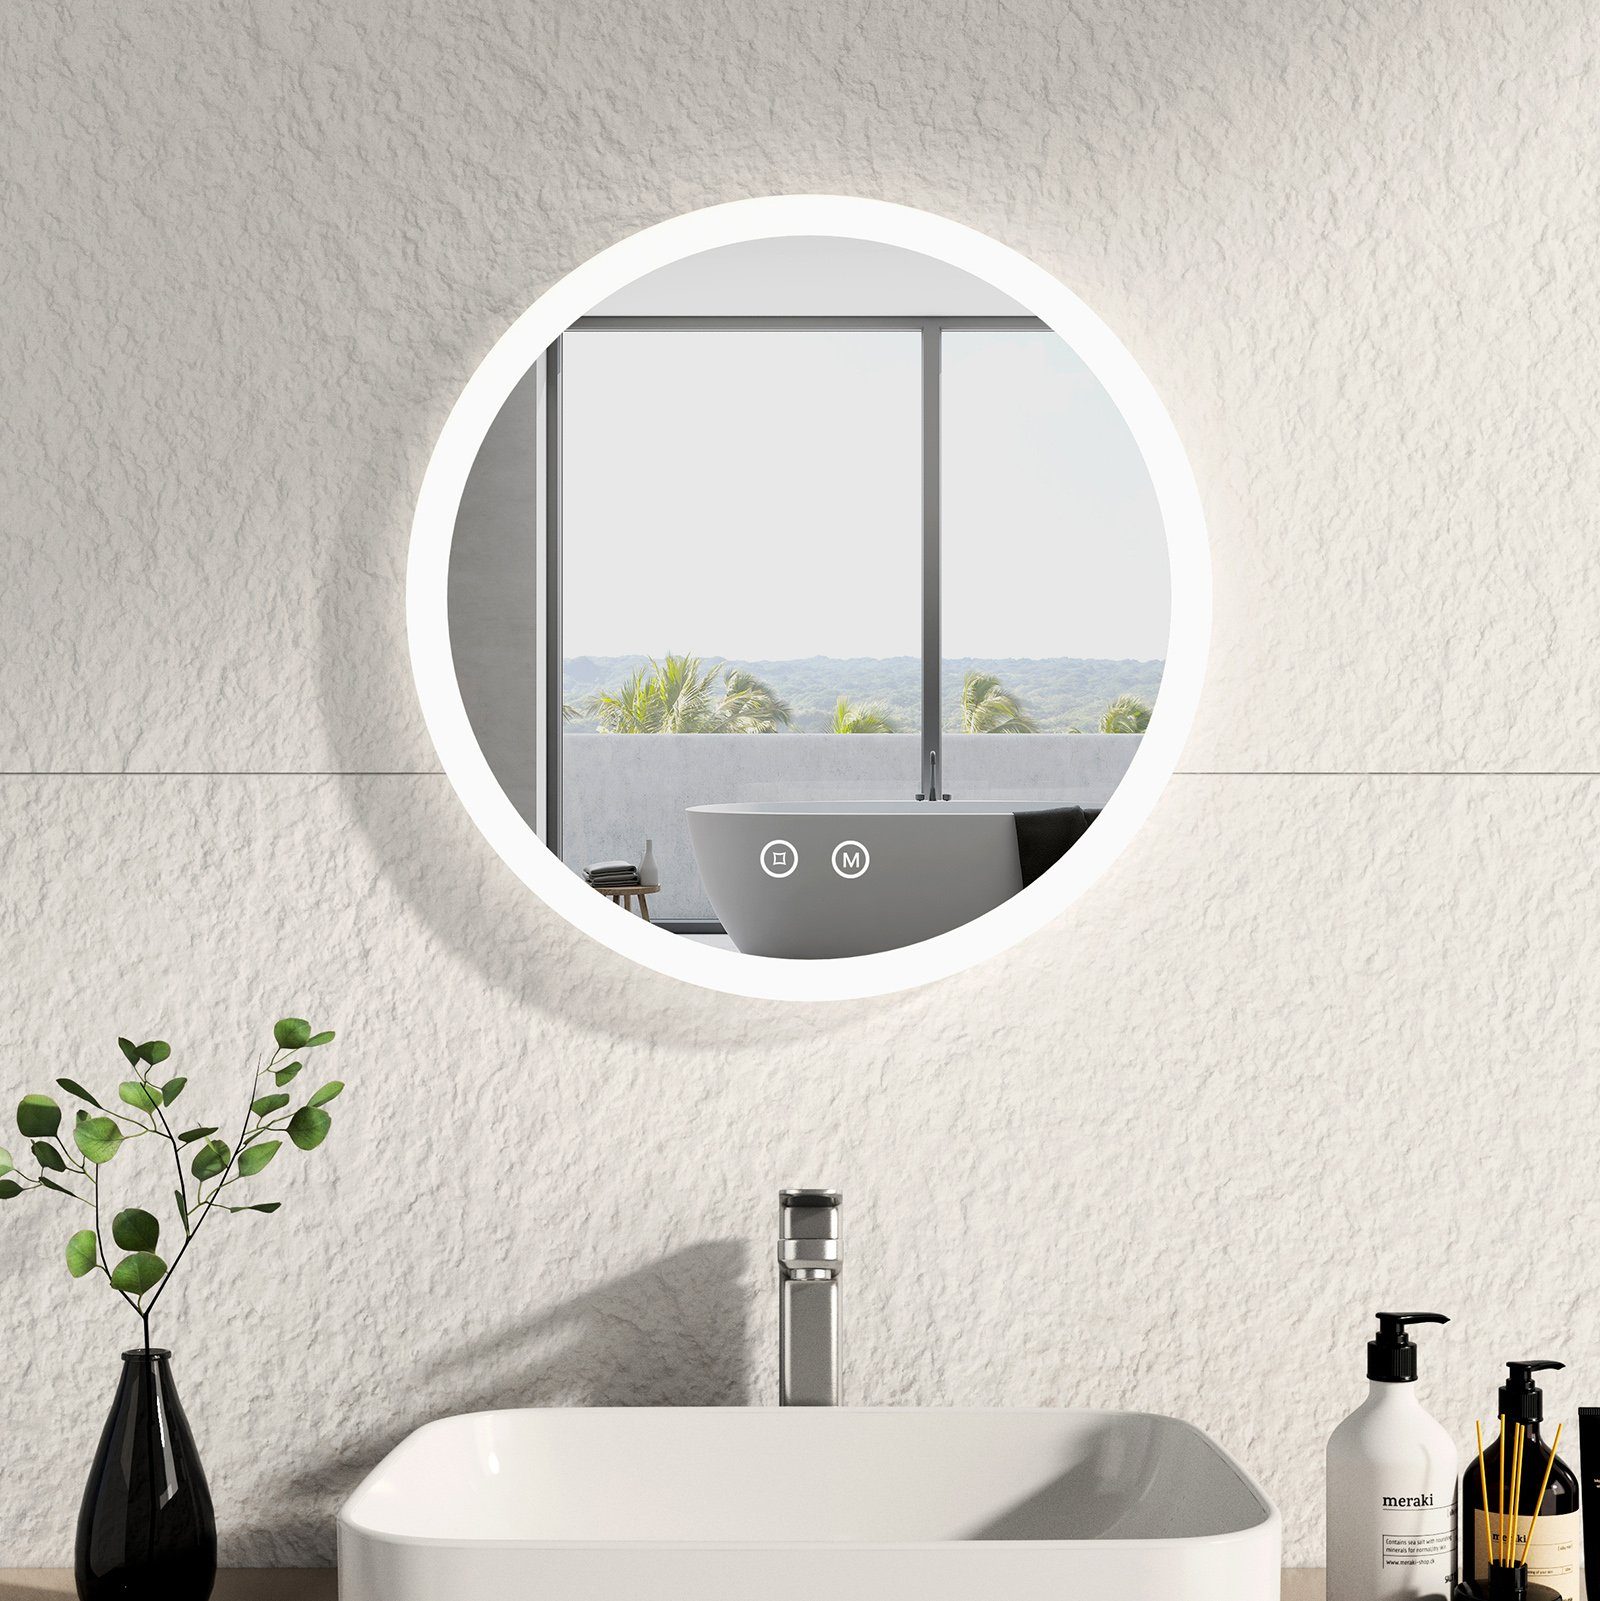 EMKE Badspiegel Rund mit Beleuchtung Badezimmerspiegel mit mattiertem Rahmen (Modell R1, Φ 50-80 cm, Touchschalter), Beschlagfrei, Memory-Funktion, 3 Lichtfarben, Dimmbar, IP44